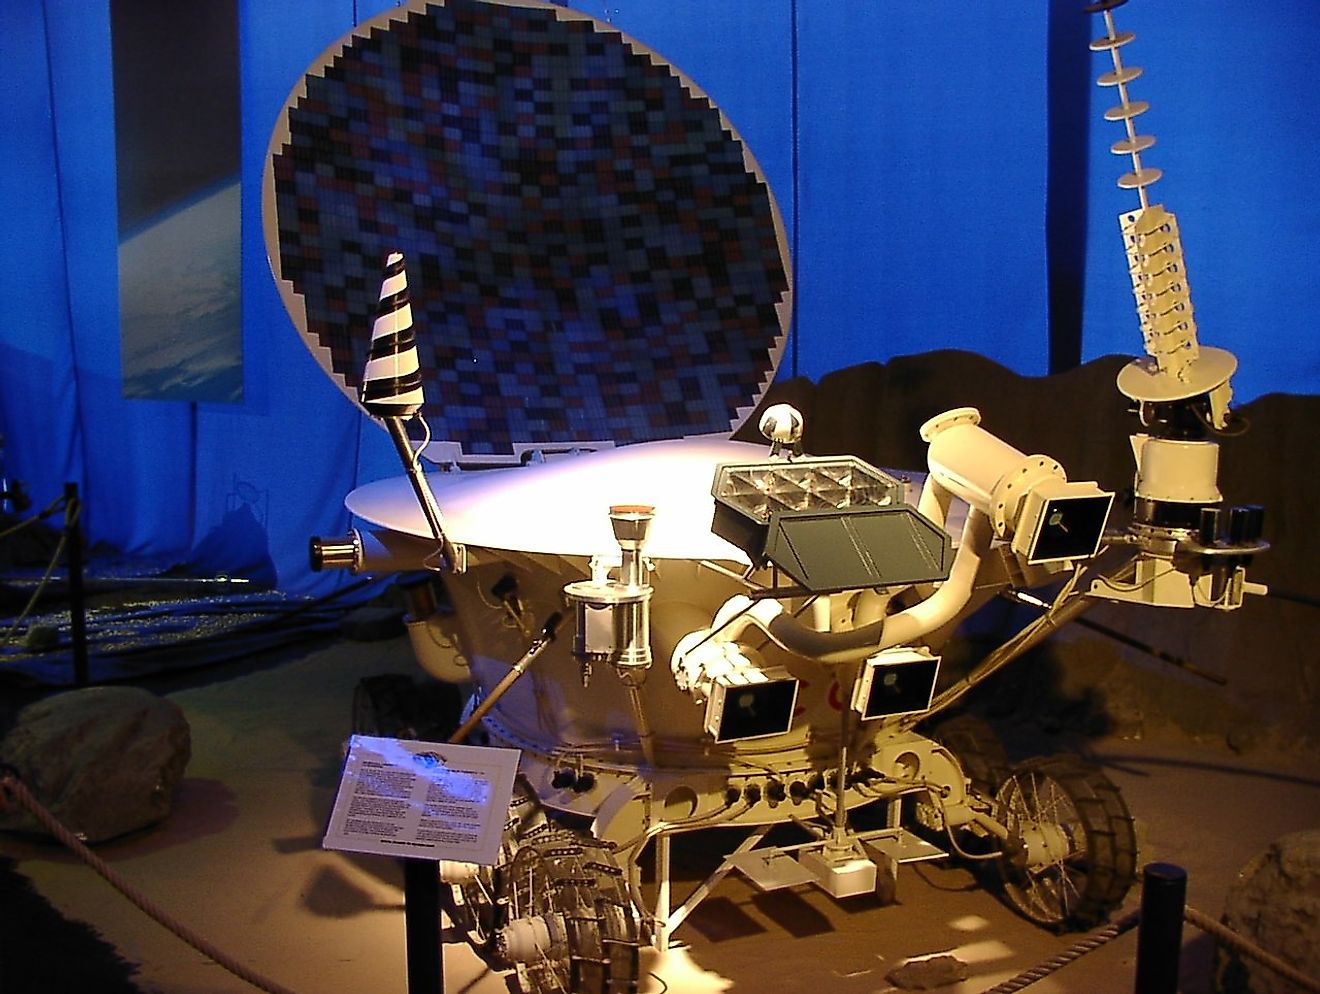 Model of Lunokhod lunar rover